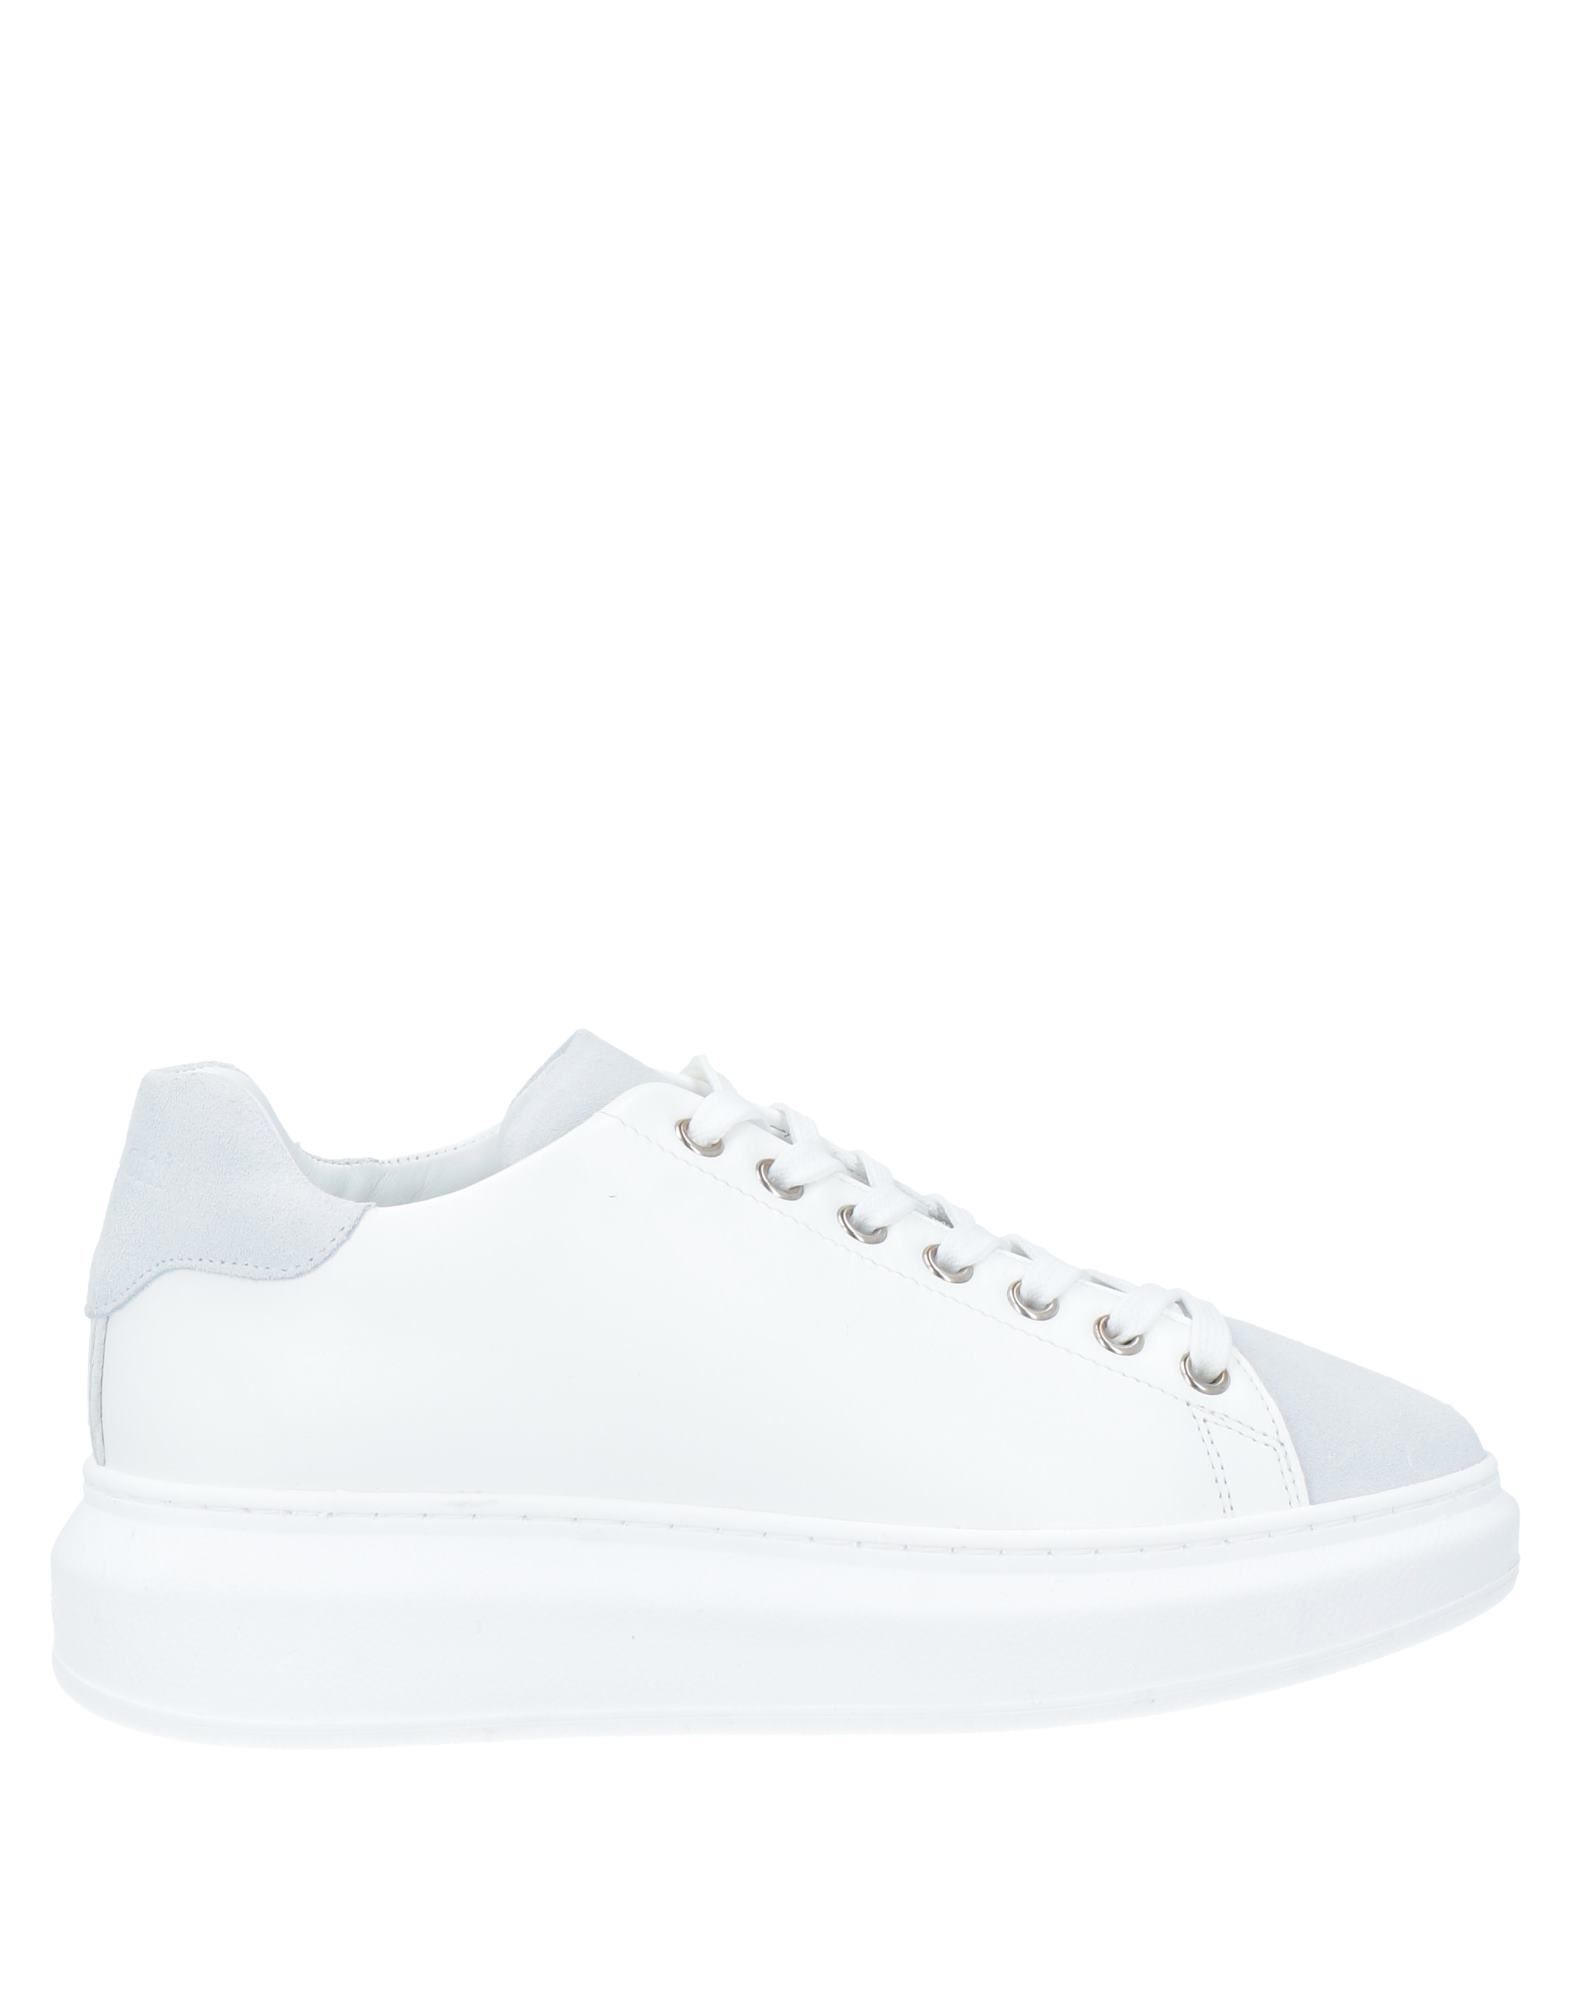 A.testoni Avz-whi A. Testoni Sneakers In White